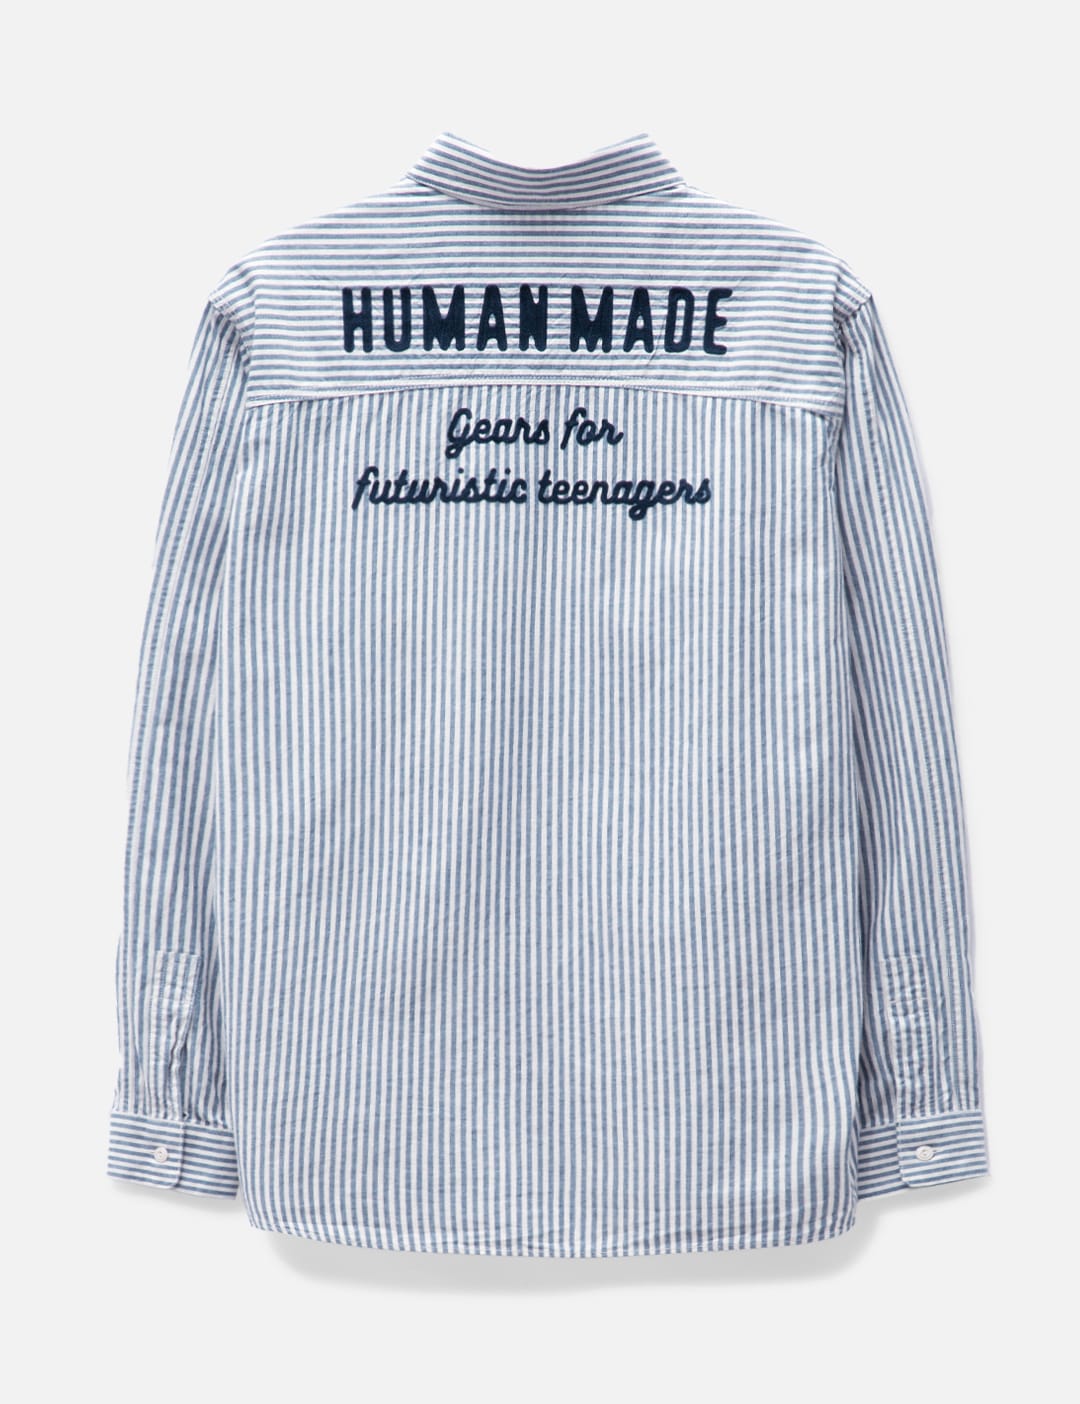 human made ワークシャツ